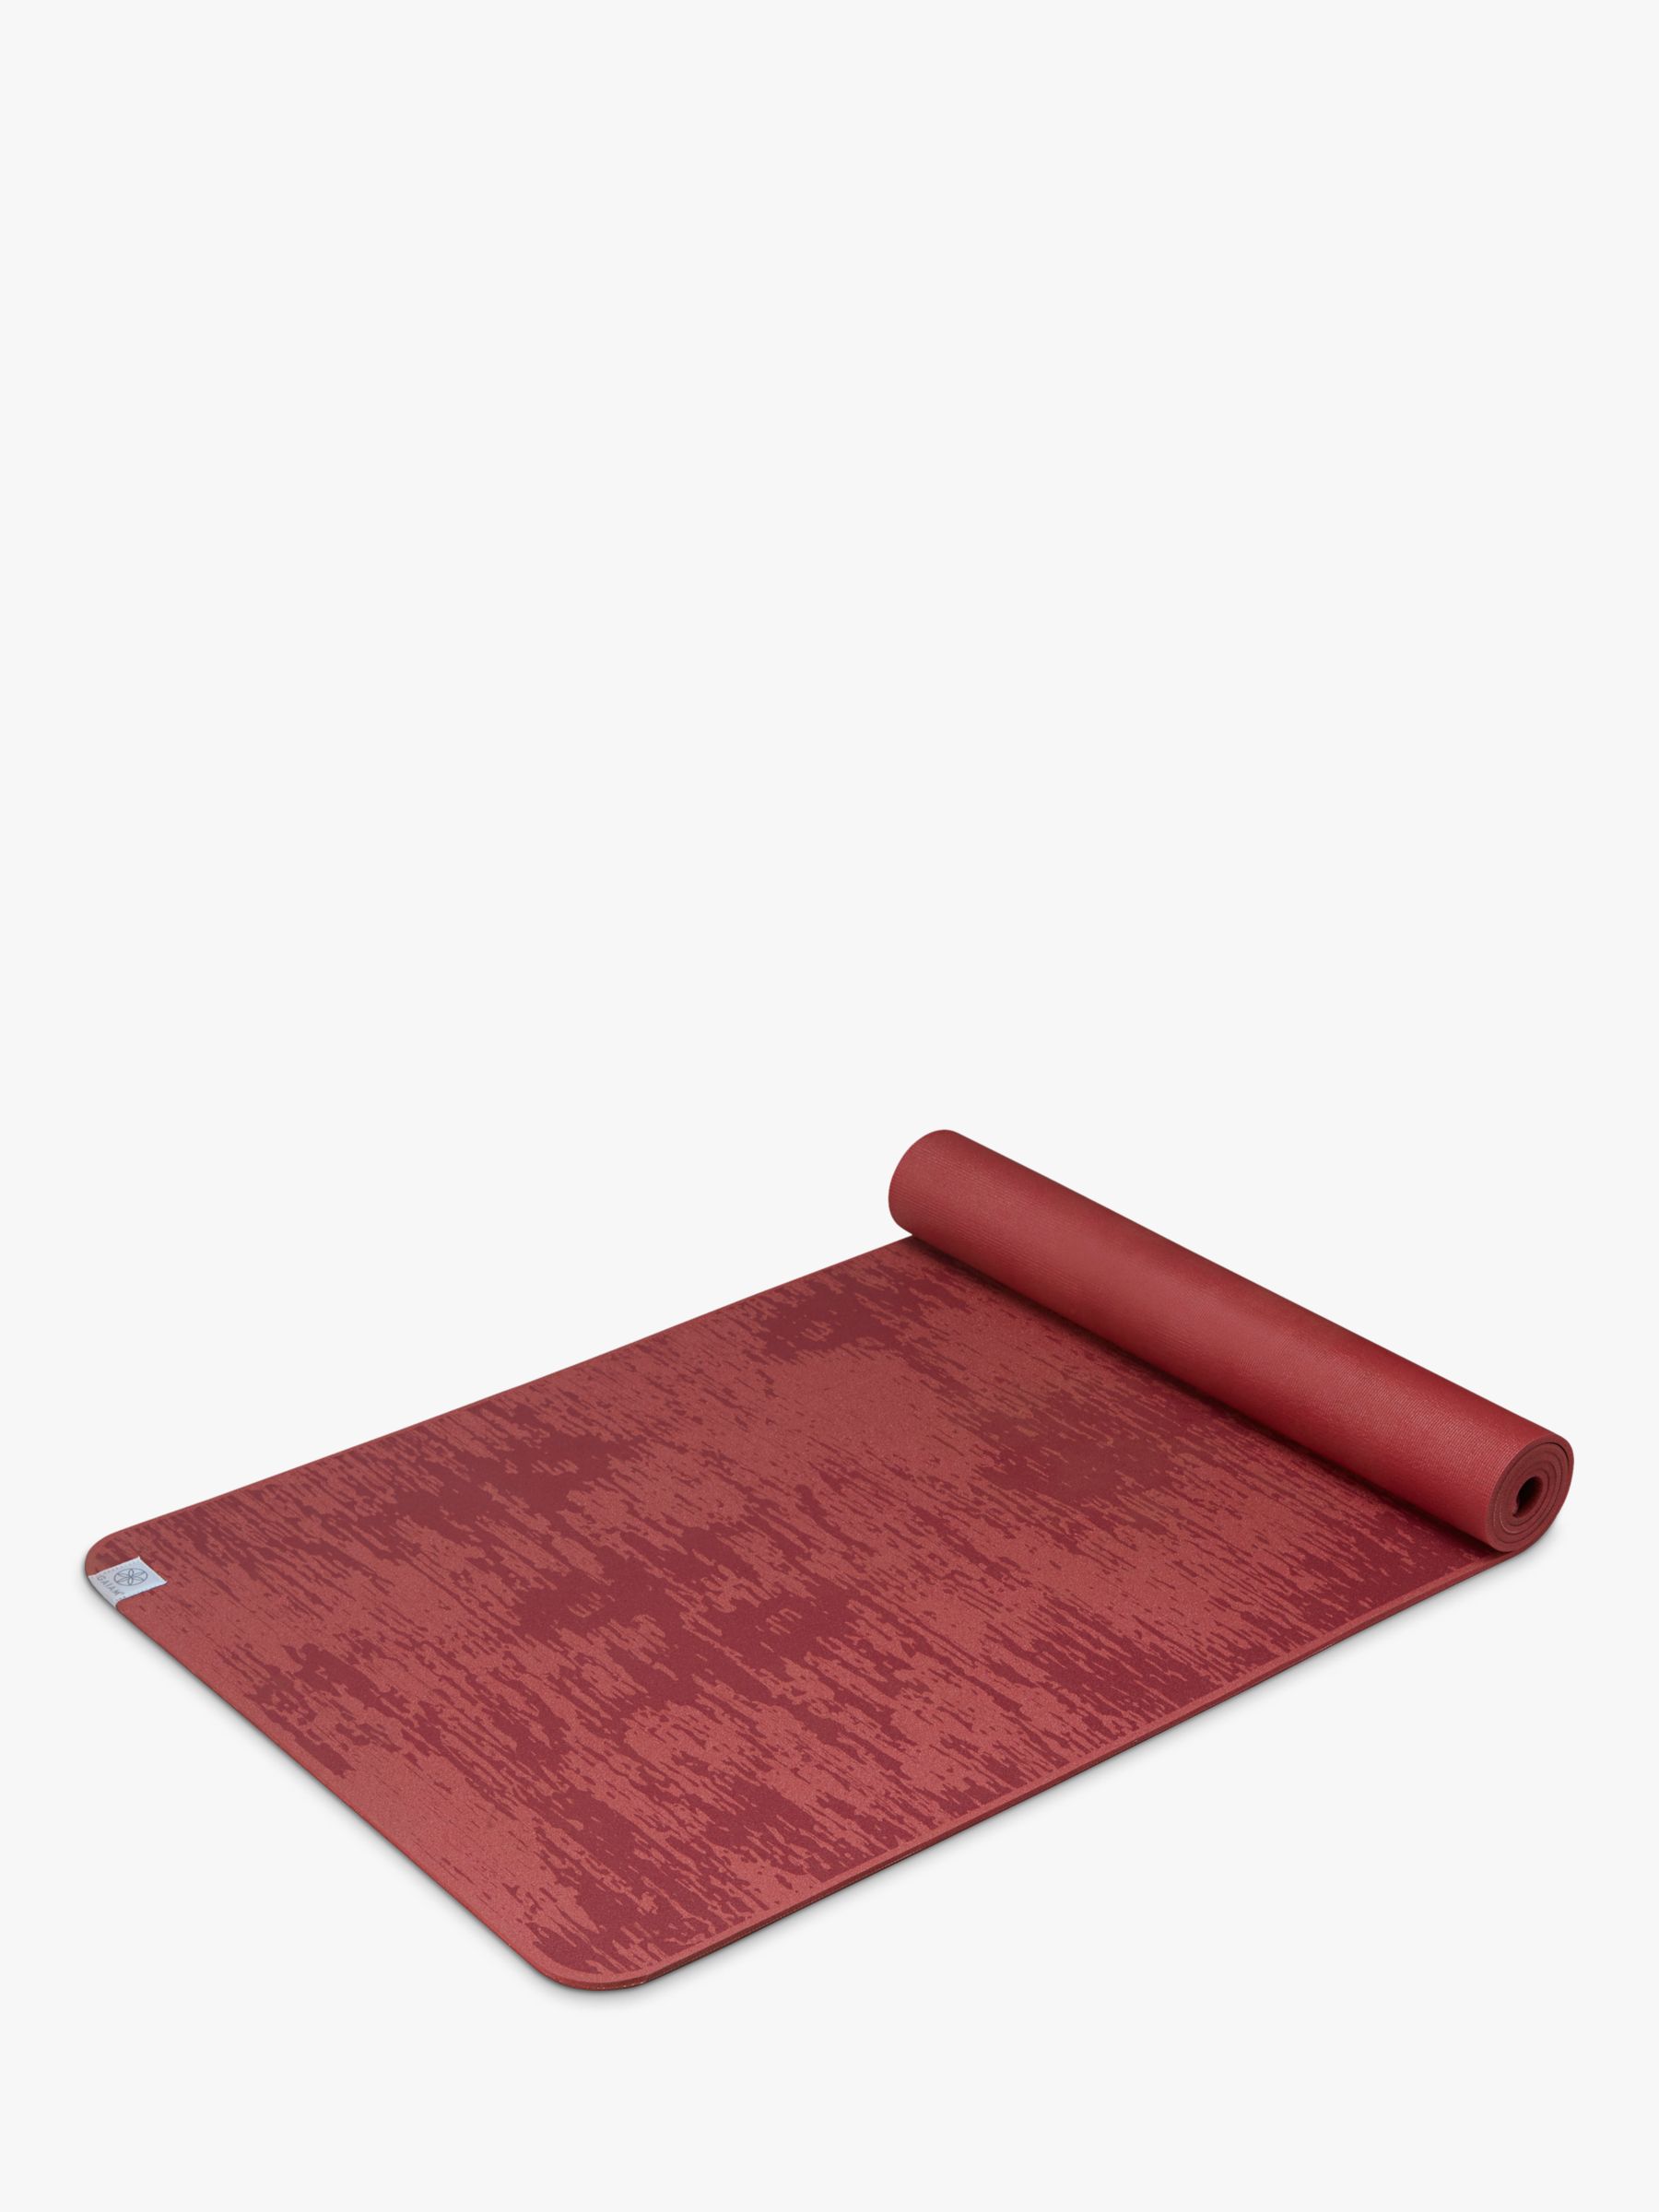 Gaiam Premium Metallic Yoga Mat (6mm) - Aubergine Medallion